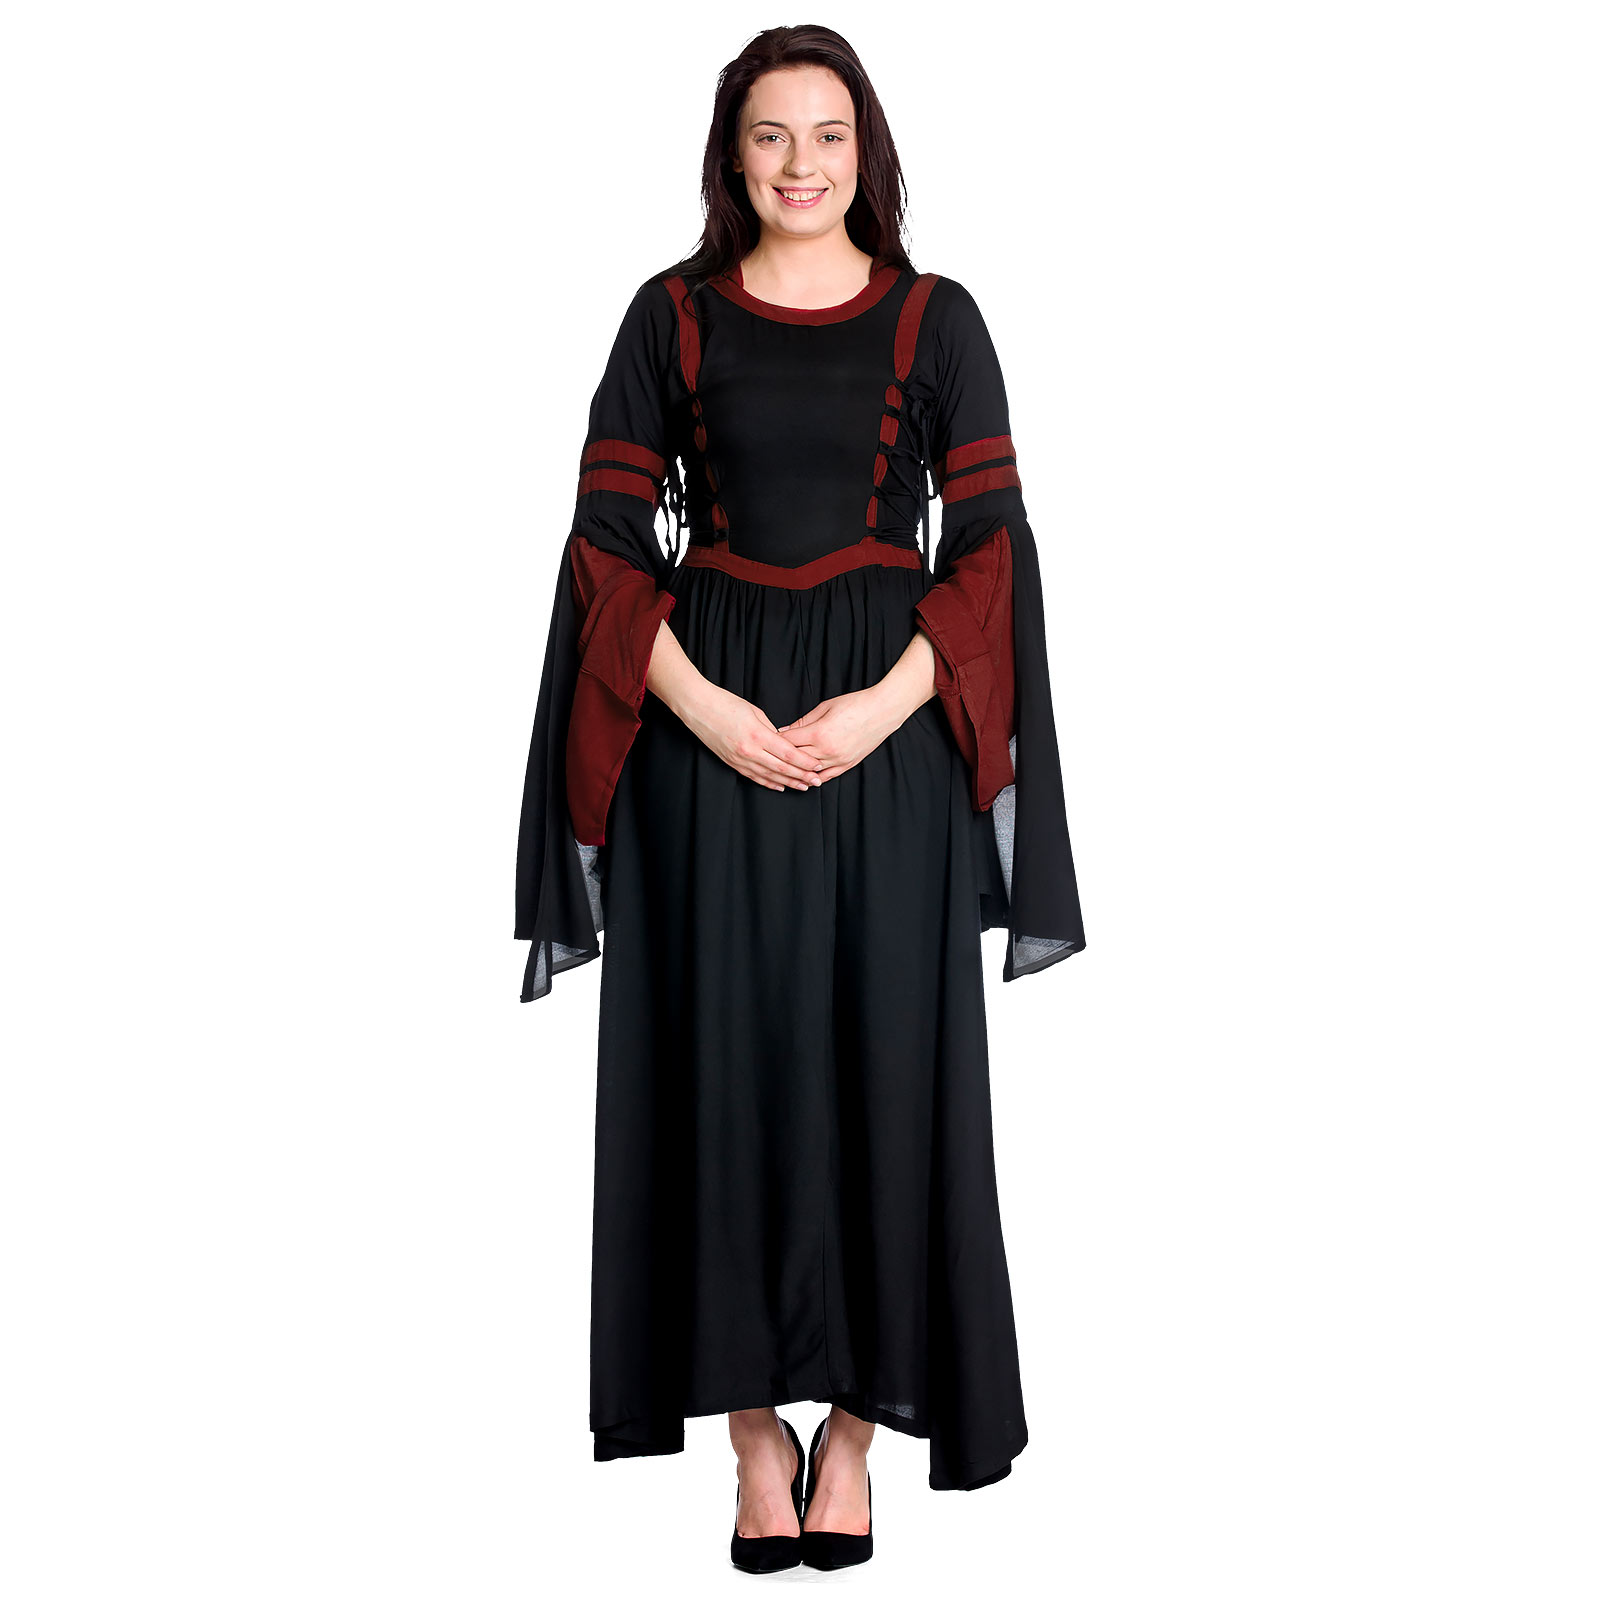 Middeleeuwse Capuchonjurk Isolde Zwart-Rood